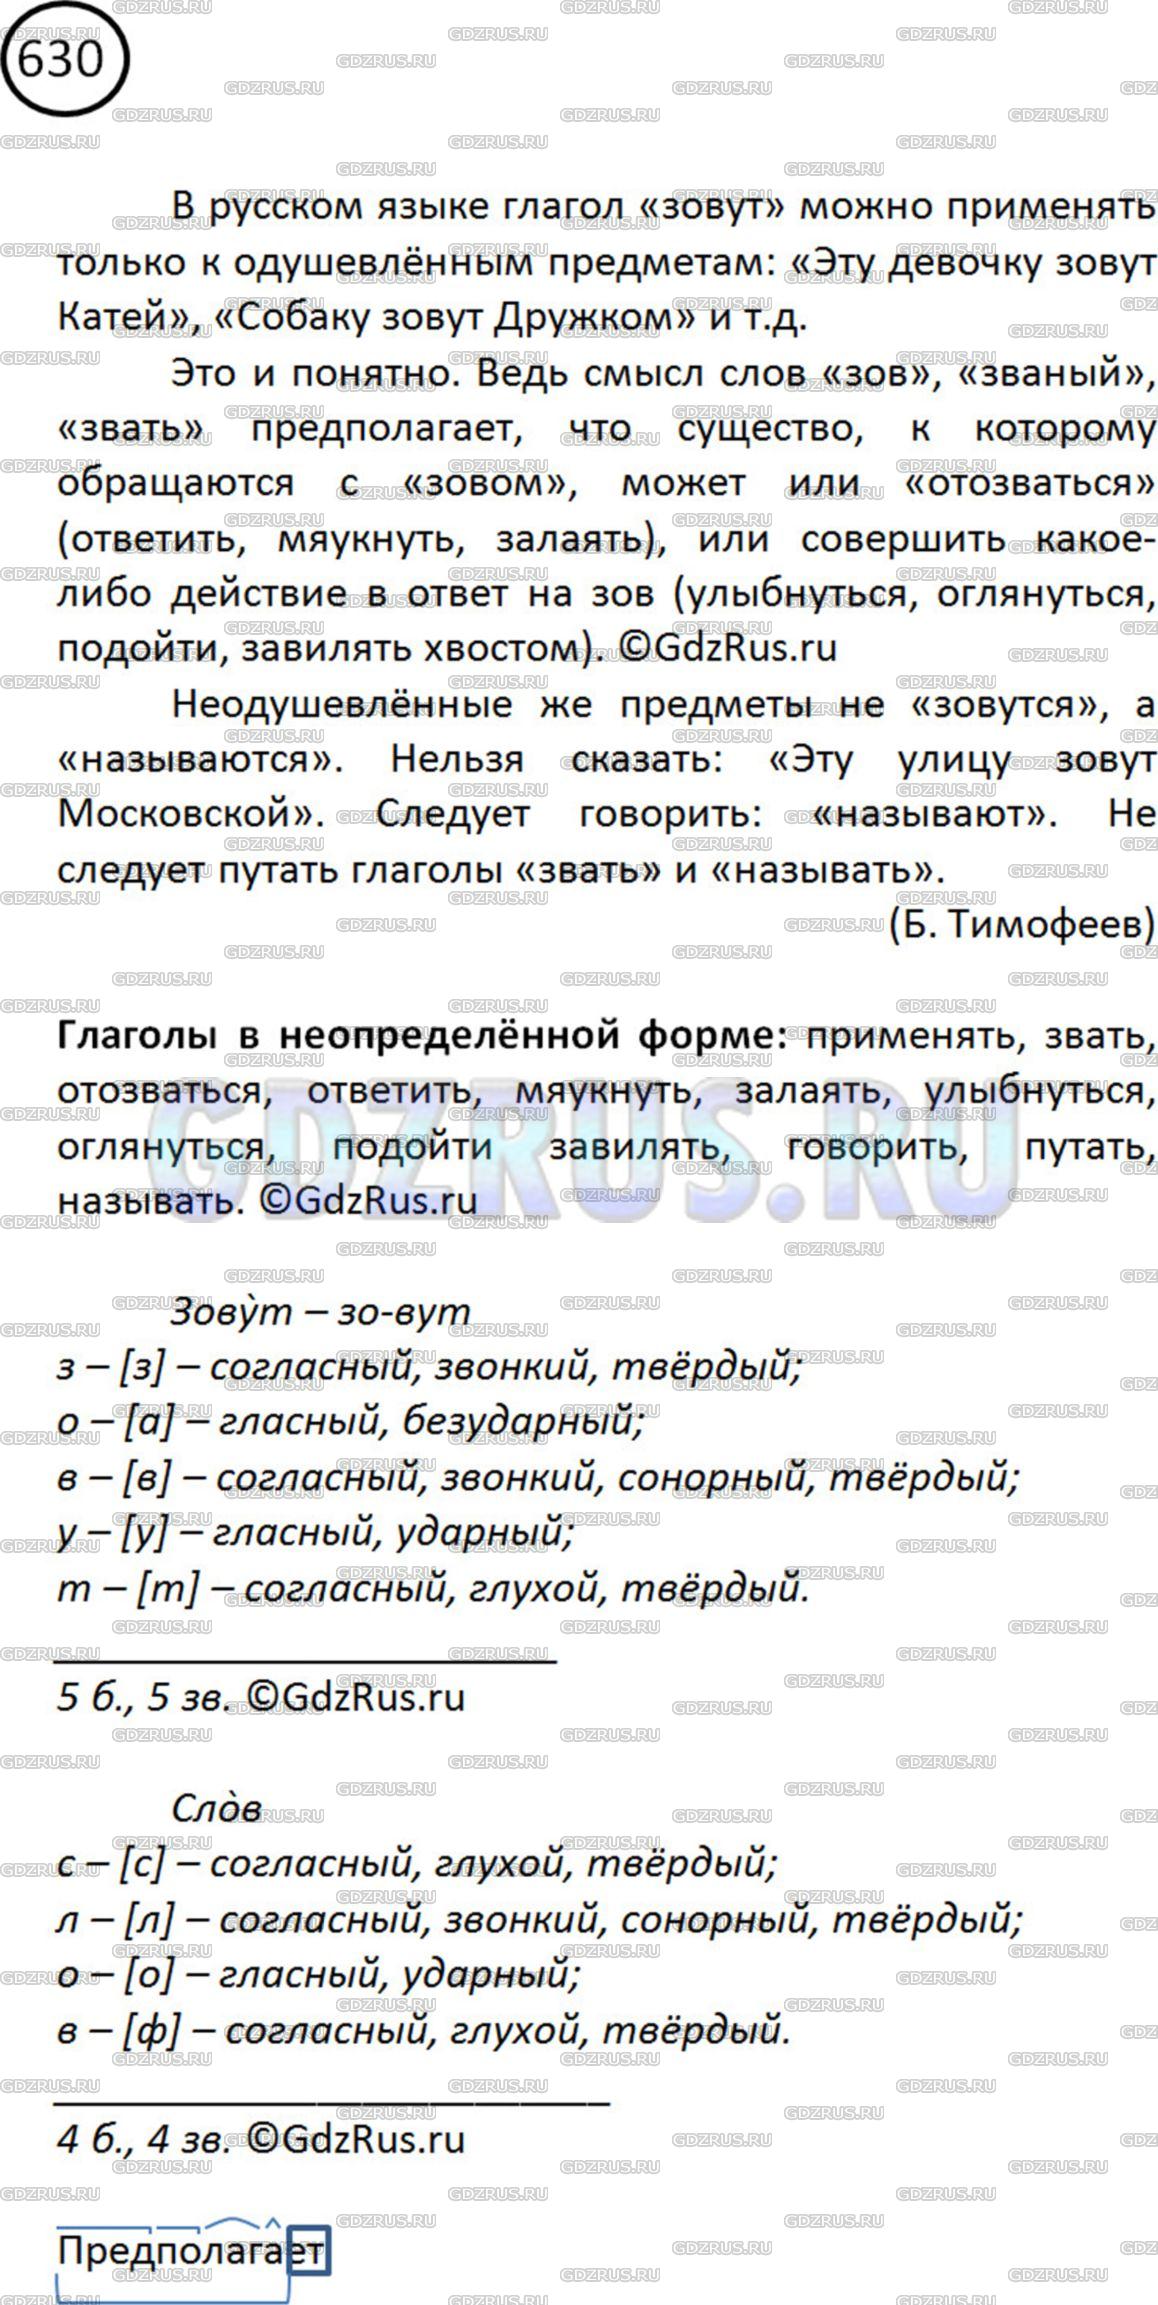 Фото решения 2: ГДЗ по Русскому языку 5 класса: Ладыженская Упр. 630